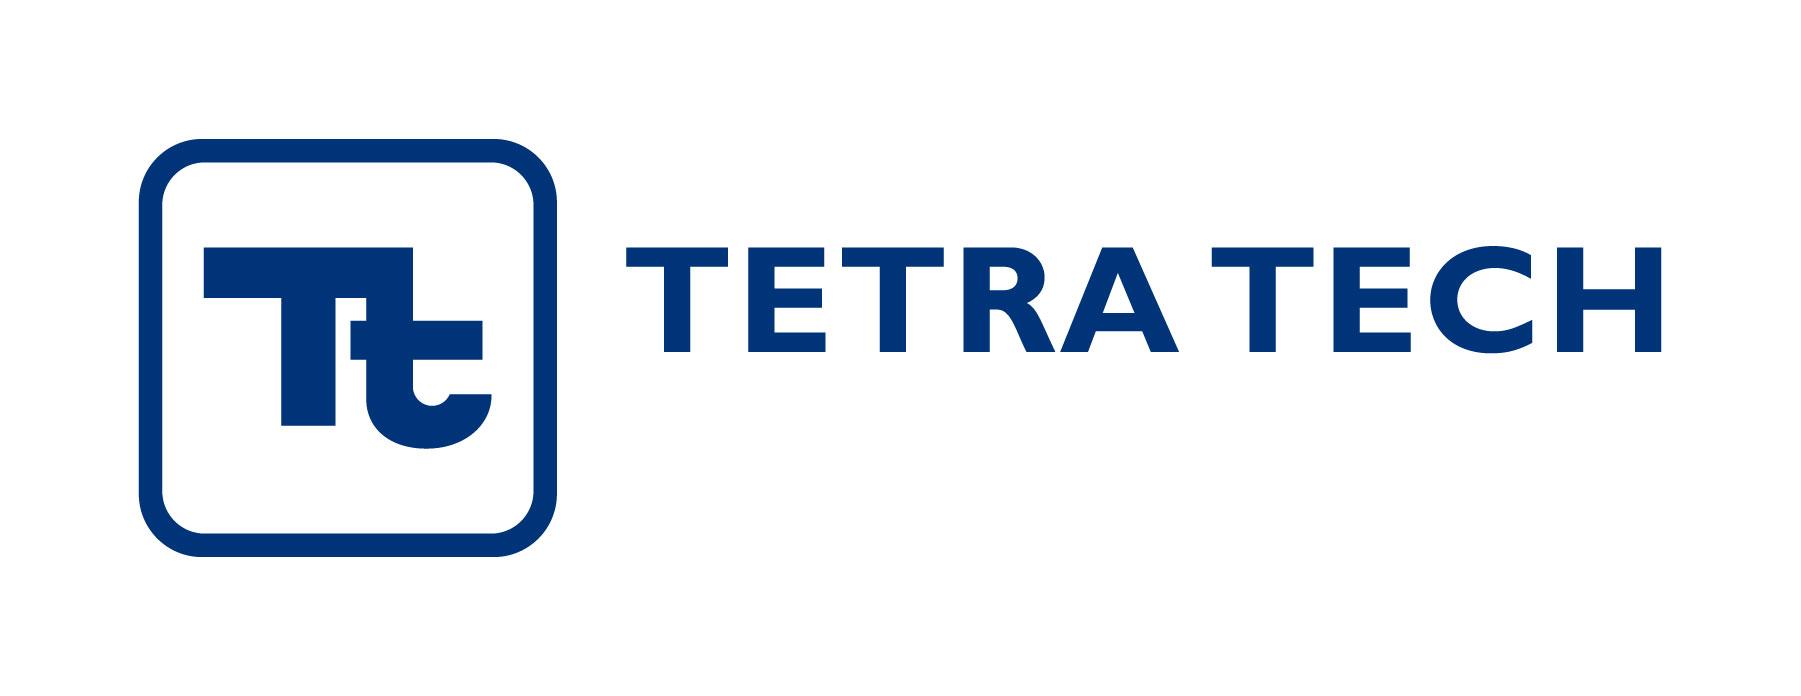 TetraTech-Tetratech International development